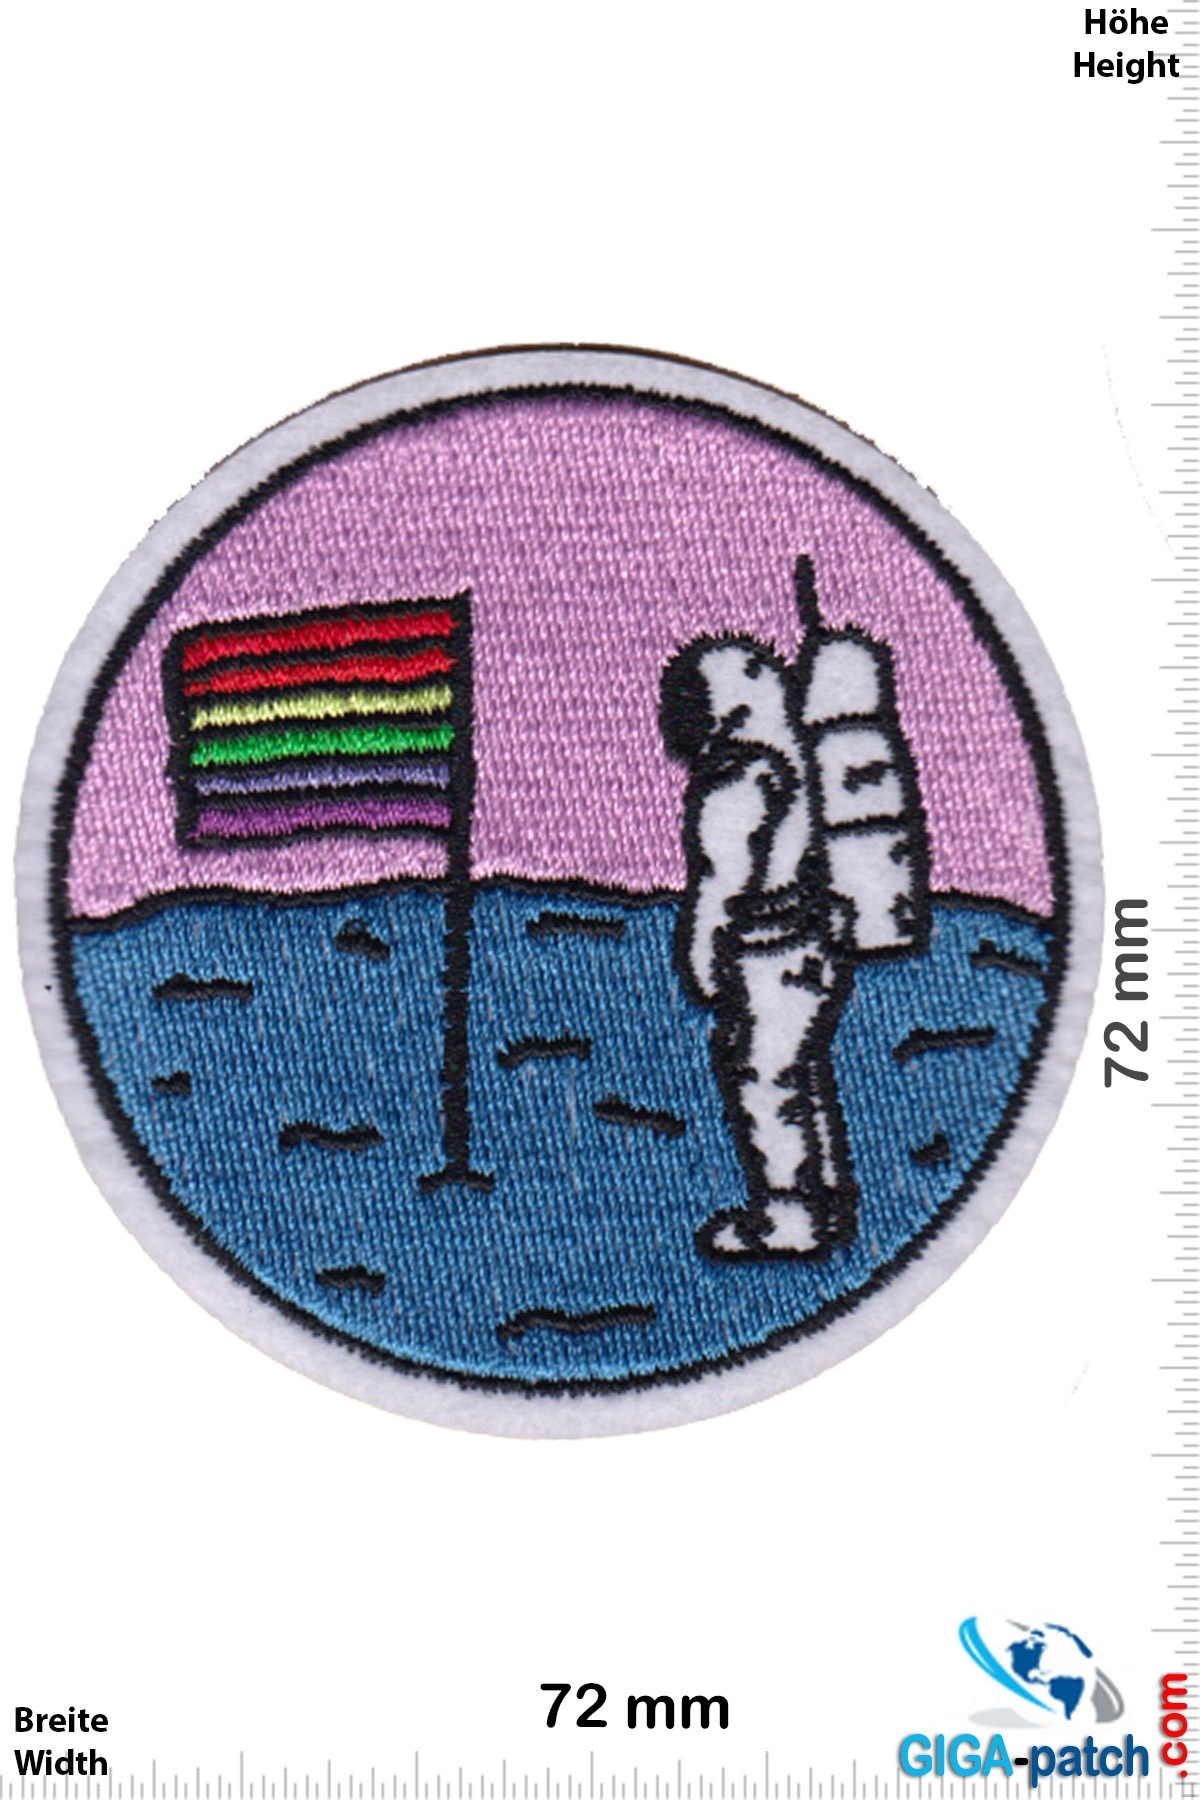 Nasa Spaceman - moon - gay - astronaut